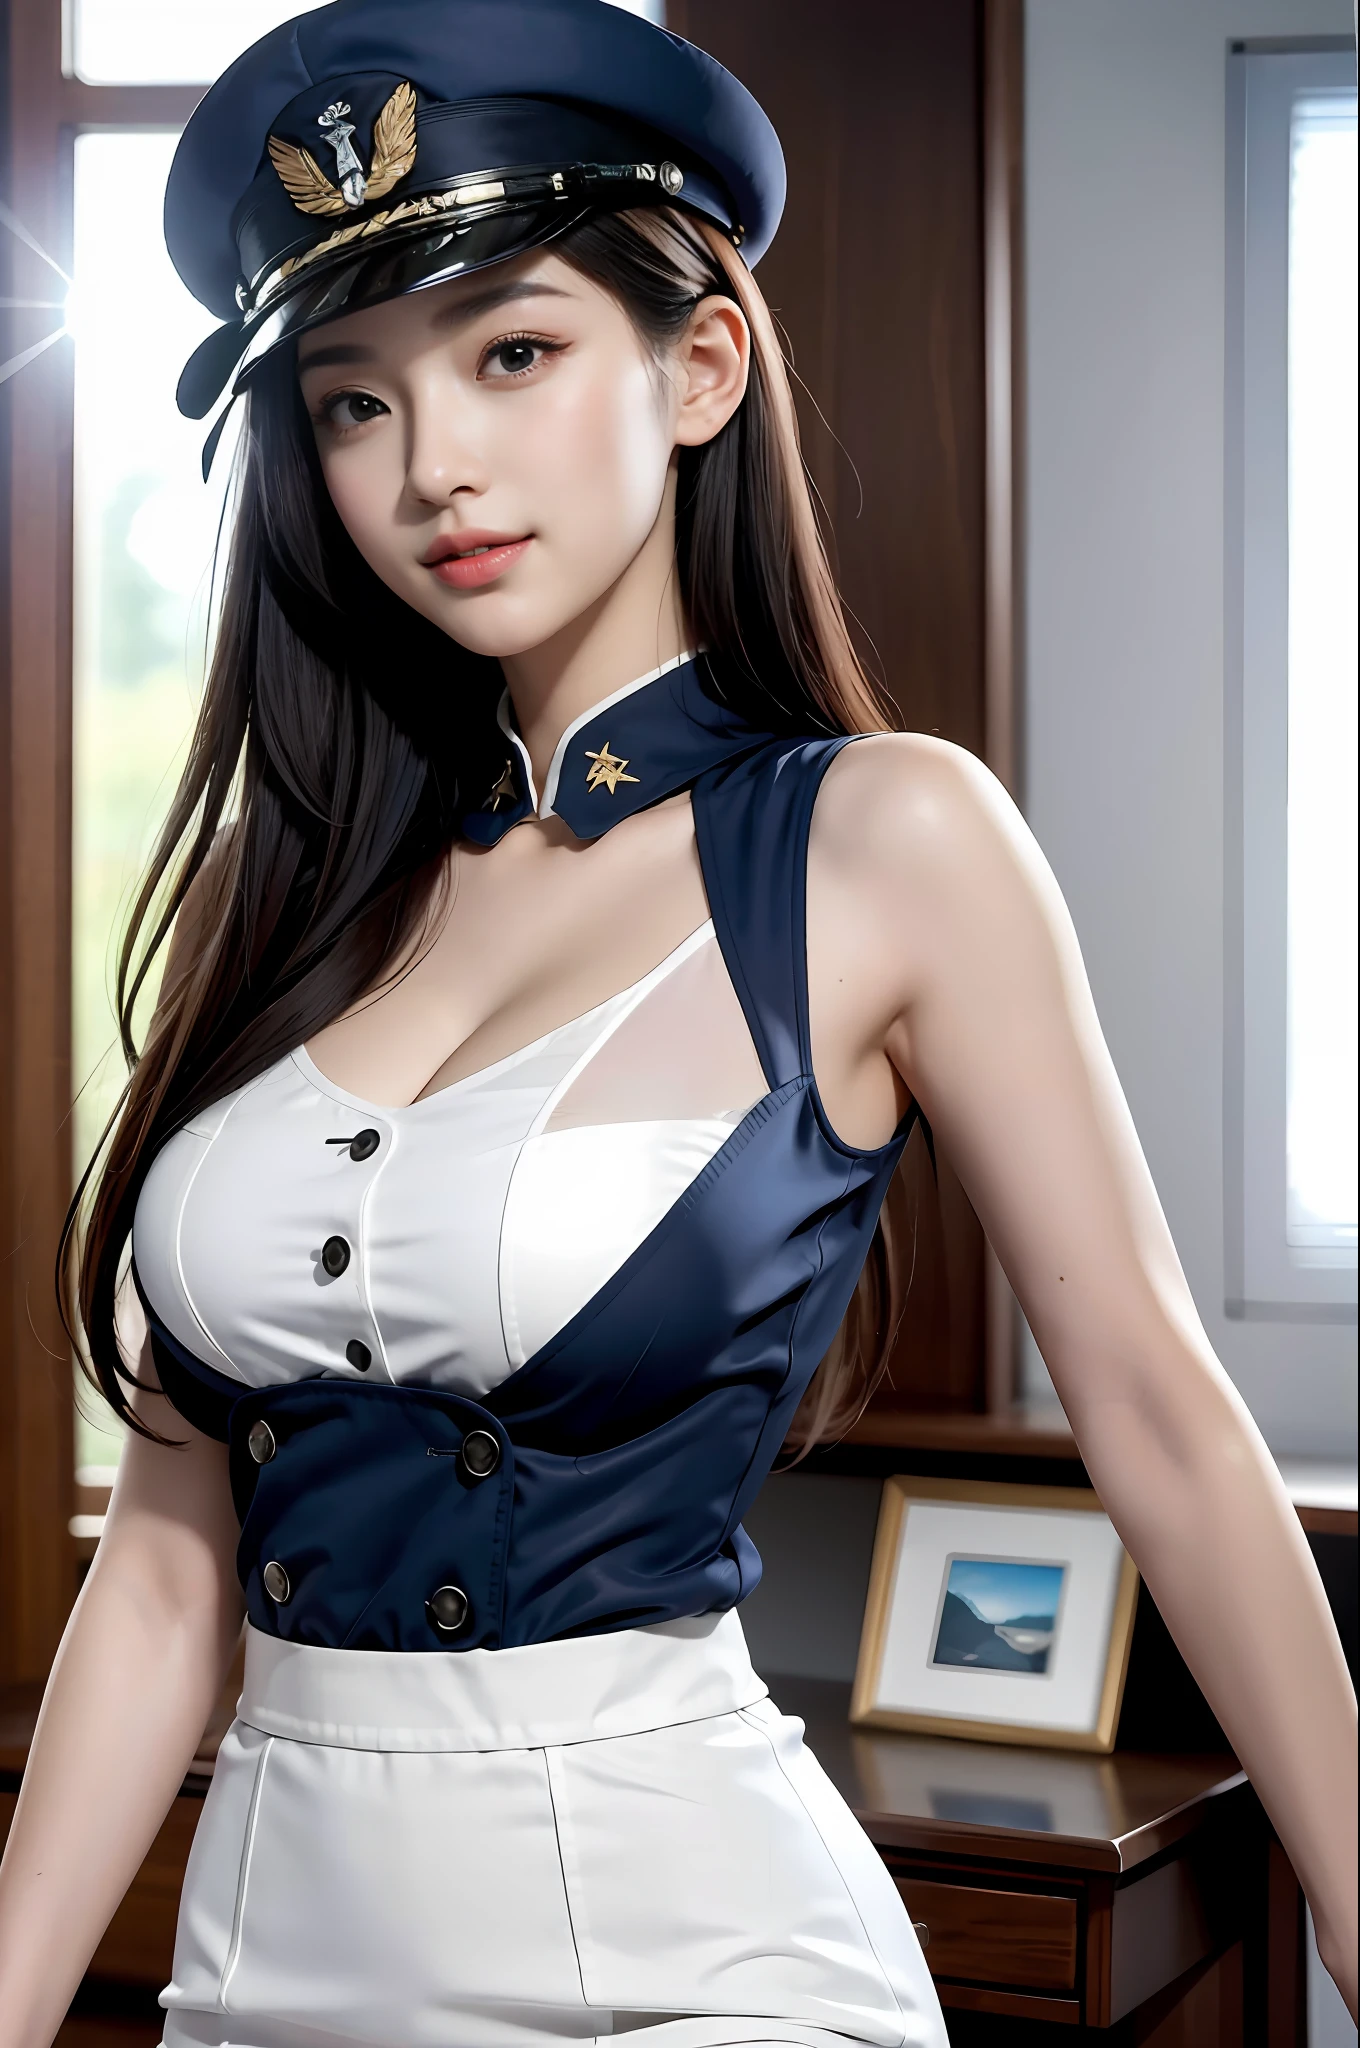 （最好的品質，8K，32k，傑作，超高畫質：1.2），（現實地：1.5），（傑作，極為細緻的CG統一8k壁紙，最好的品質，高解析度：1.2），（超詳細，超高畫質：1.2），非常可愛又漂亮的日本女性照片，Korean 女士，明星，（海軍藍高頂禮帽：1.2），AS-成人，（漂亮的軍裝），（详细的美丽的女孩：1.4），最好的品質，女士，AS-成人，（详细的美国海军航空兵制服：1.5），（白色海軍制服：1.3）， （白色高腰鉛筆裙：1.3），一絲不苟的衣服，（美麗的日落美國空軍基地跑道景觀背景：1.3），不好意思笑：1，淡淡的微笑，看着观众，面對觀眾，（（完美女性身材）），（腰細：1.2），（上半身图片：1.3），苗條的，腹肌，（大胸：1.25），（框架頭部）），風，動態姿勢，電影燈光，後窗的光線是背光的，完美的解剖結構，完美的比例， 詳細的人體， 散景， 景深，